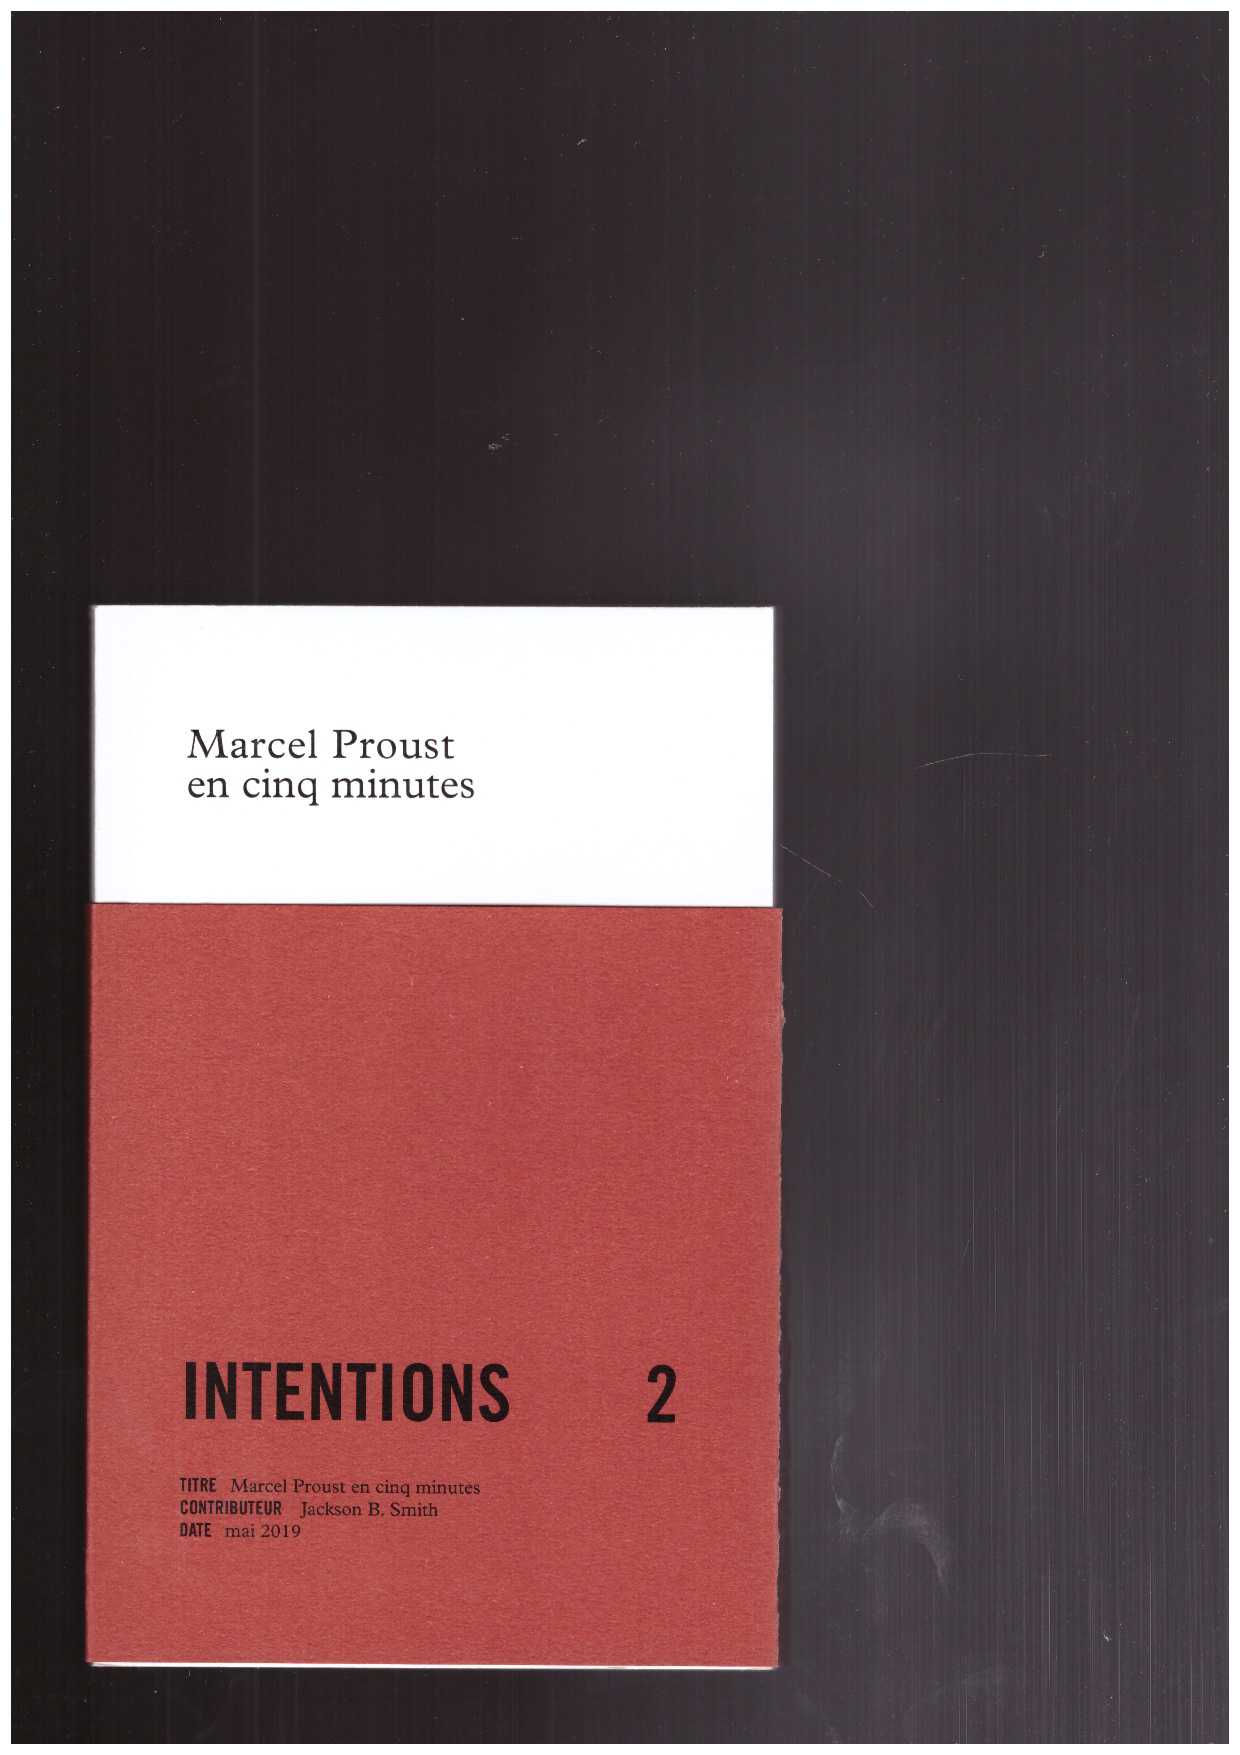 B. SMITH, Jackson - Intentions 2. Marcel Proust en cinq minutes